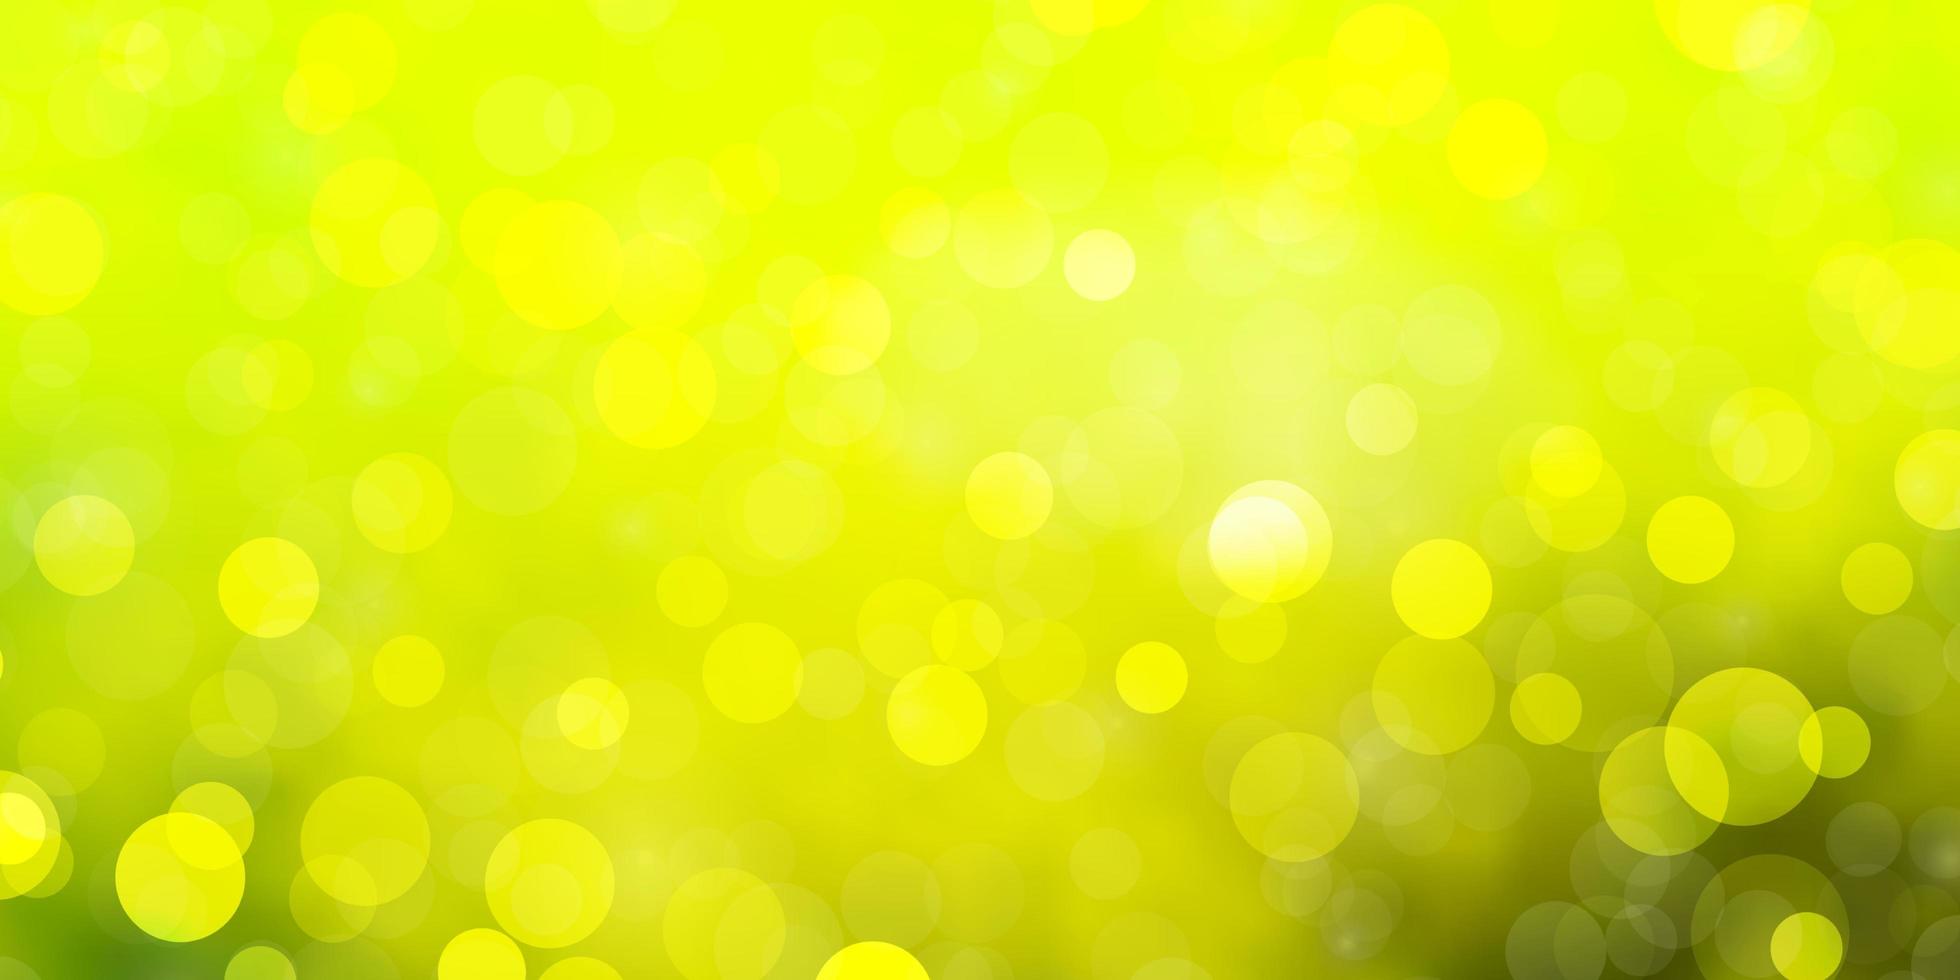 ljusgrön, gul vektorbakgrund med cirklar. vektor